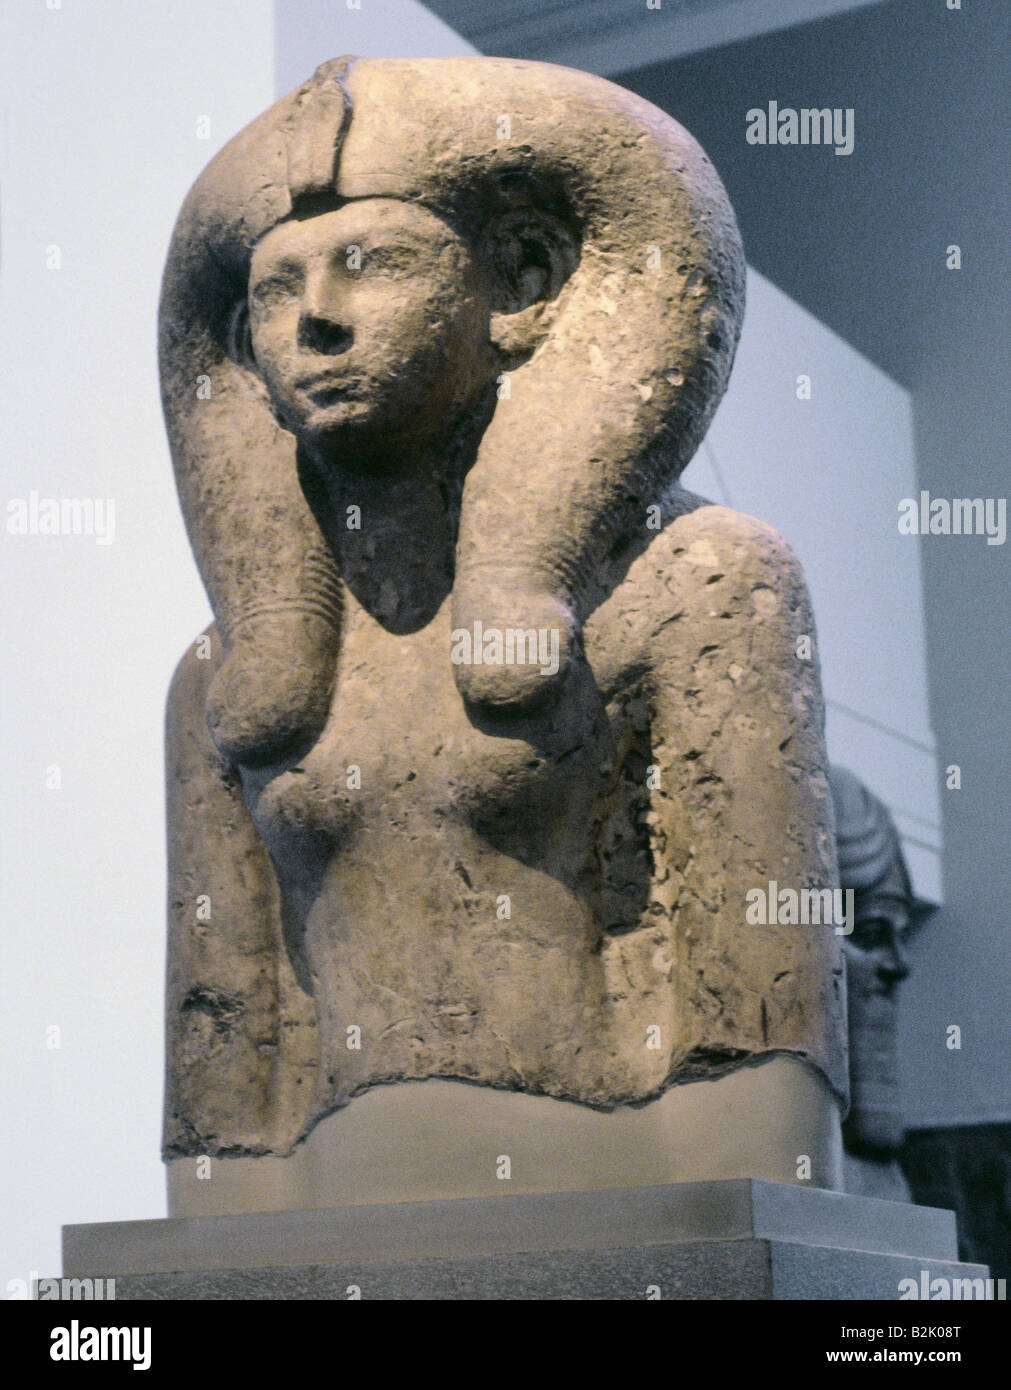 Bildende Kunst, antike, Ägypten, Skulptur, Königin Meritamun, Ehefrau von König Amenhotep I. (ca. 1514 - 1493 V.CHR., 18. Dynastie), Karnak, British Museum, London, Artist's Urheberrecht nicht gelöscht werden Stockfoto